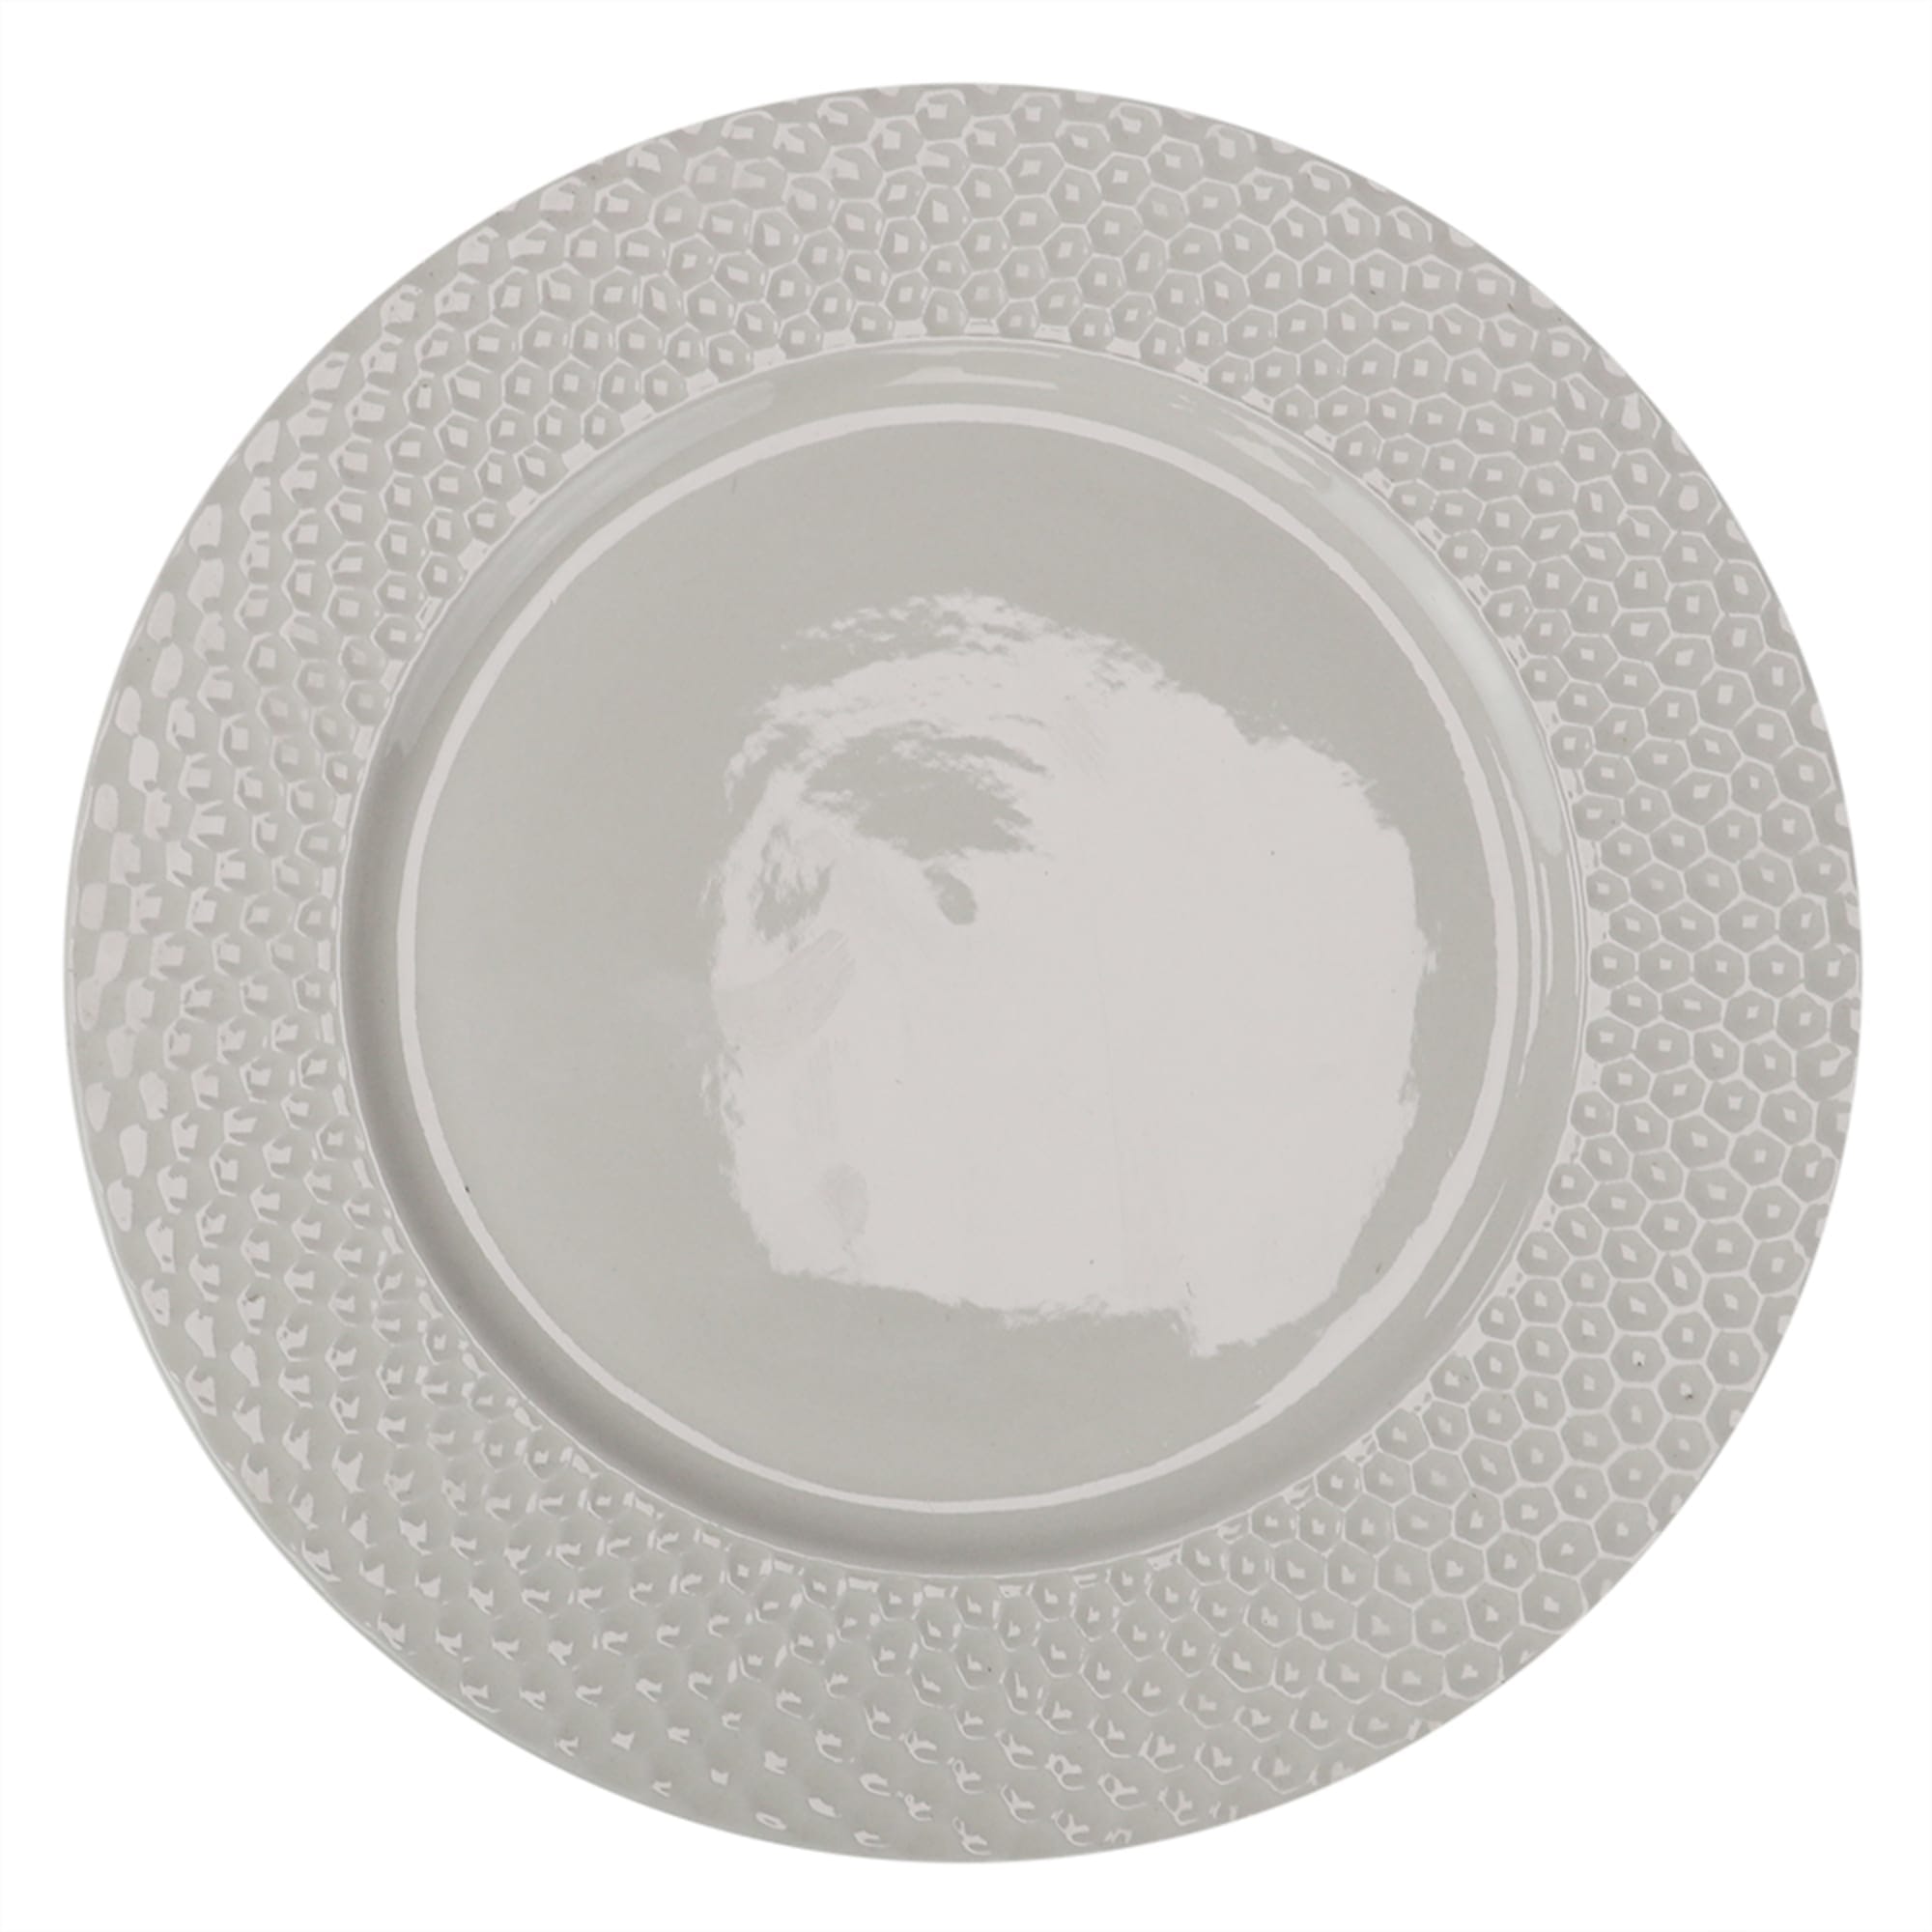 Home Basics Embossed Honeycomb 10.5" Ceramic Dinner Plate, White $3.00 EACH, CASE PACK OF 24